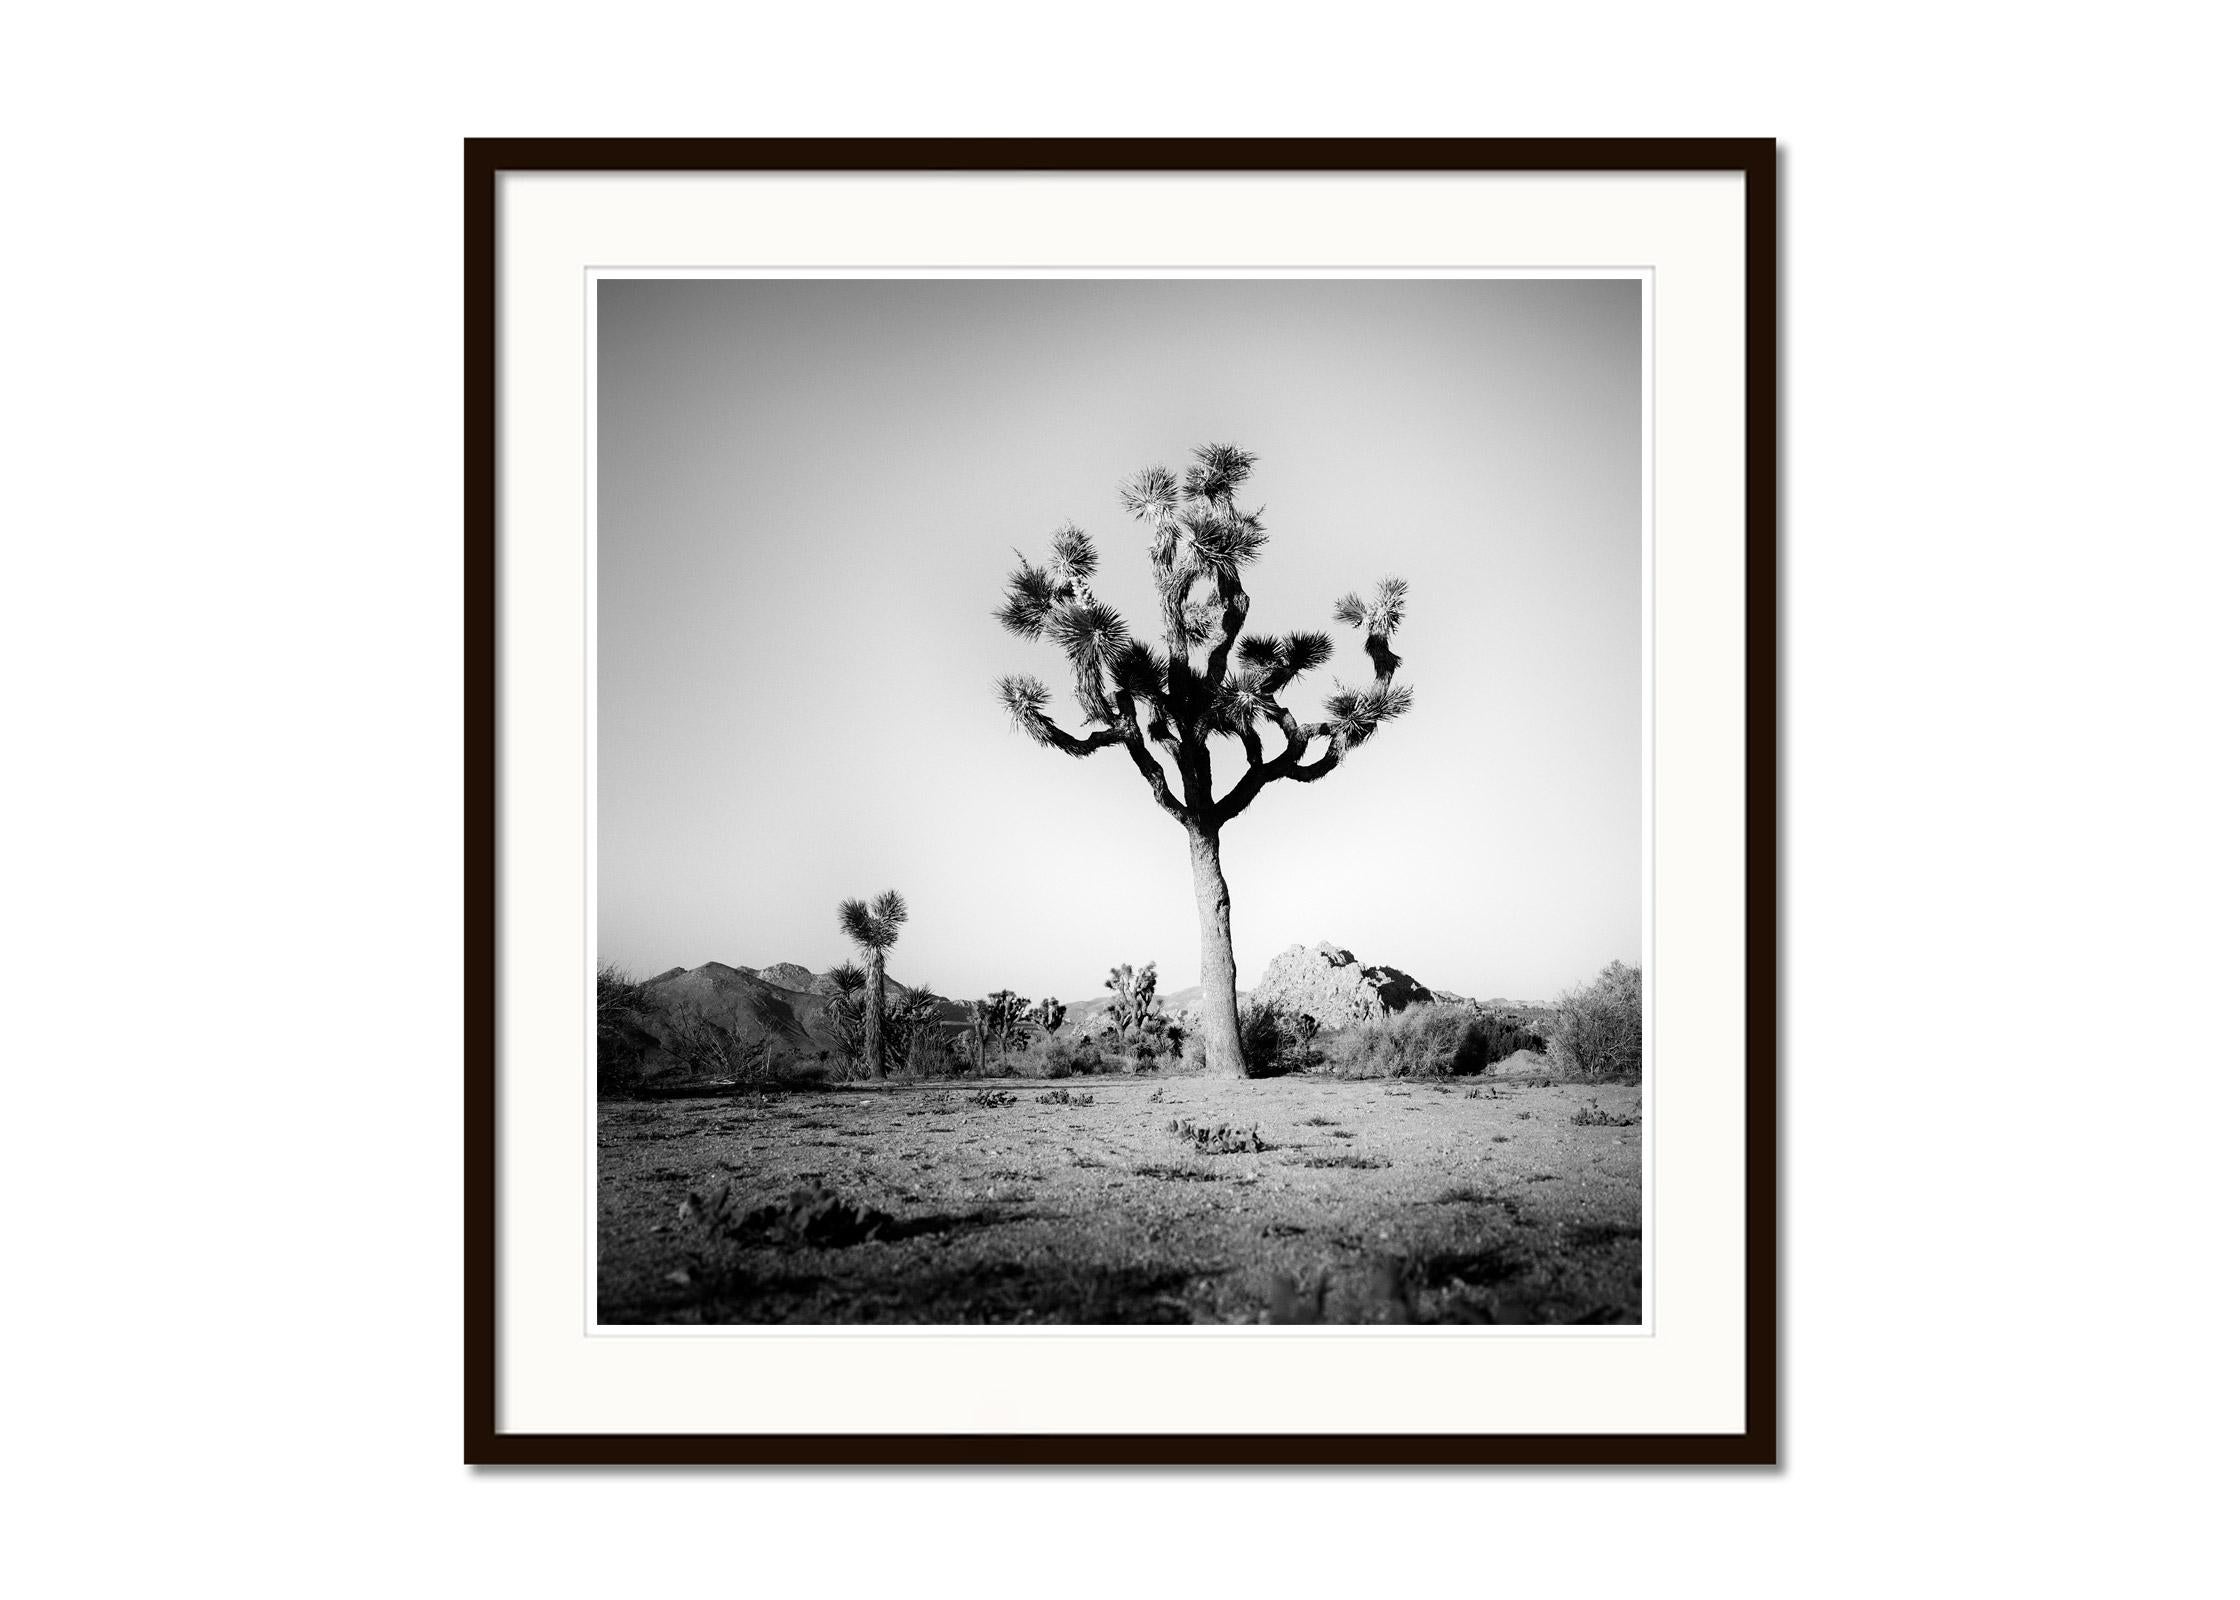 Joshua Tree, National Park, Kalifornien, USA, B&W-Landschaftsfotografie, Kunstdruck (Grau), Landscape Photograph, von Gerald Berghammer